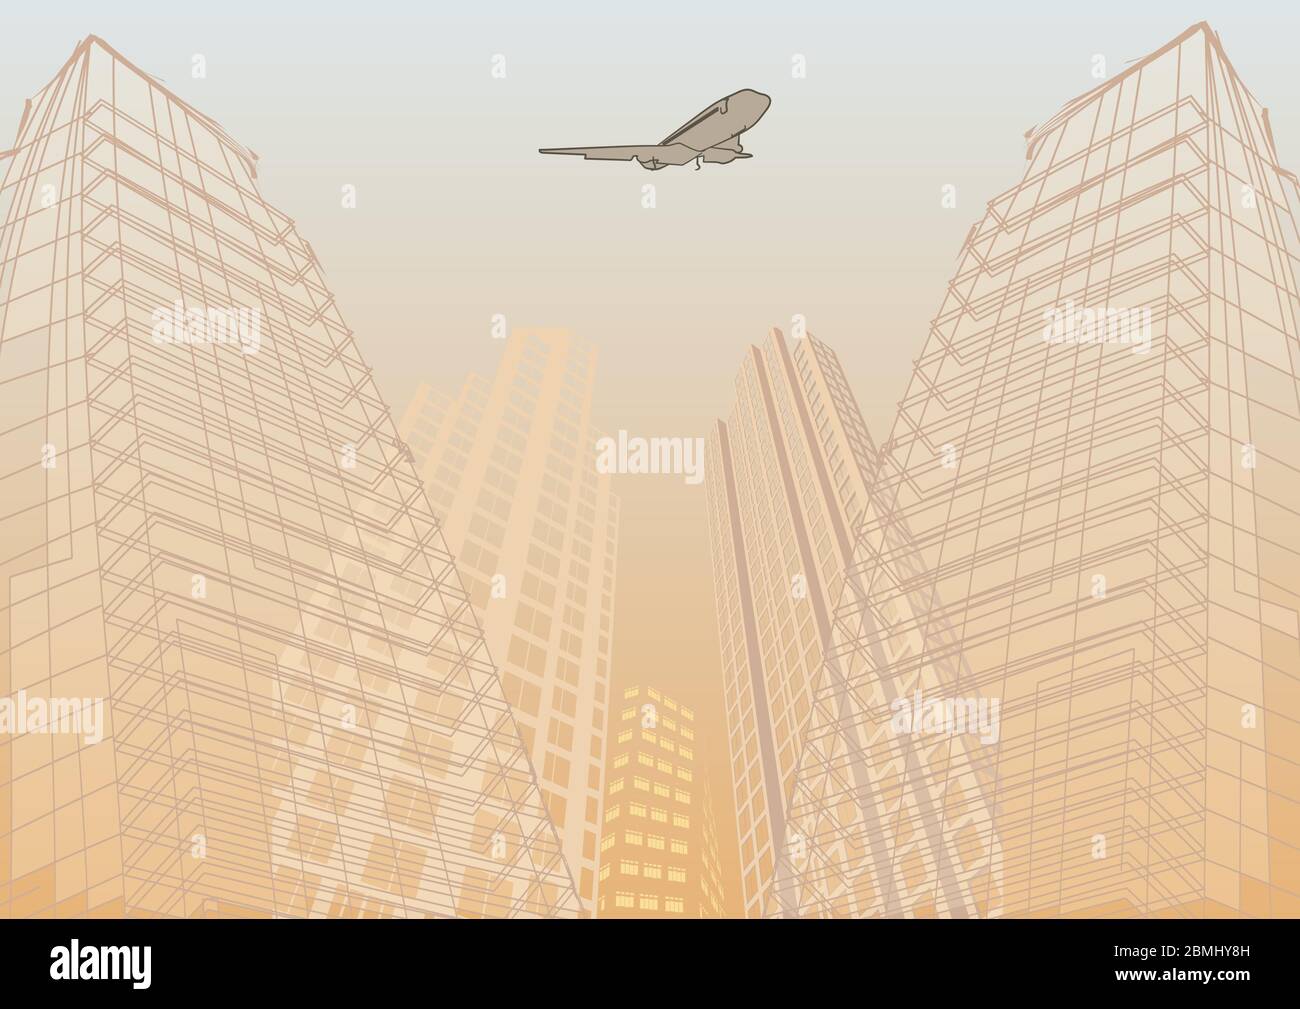 Reise mit dem Flugzeug. Illustration des Flugzeugs über Skizze des Gebäudes fliegen Stock Vektor